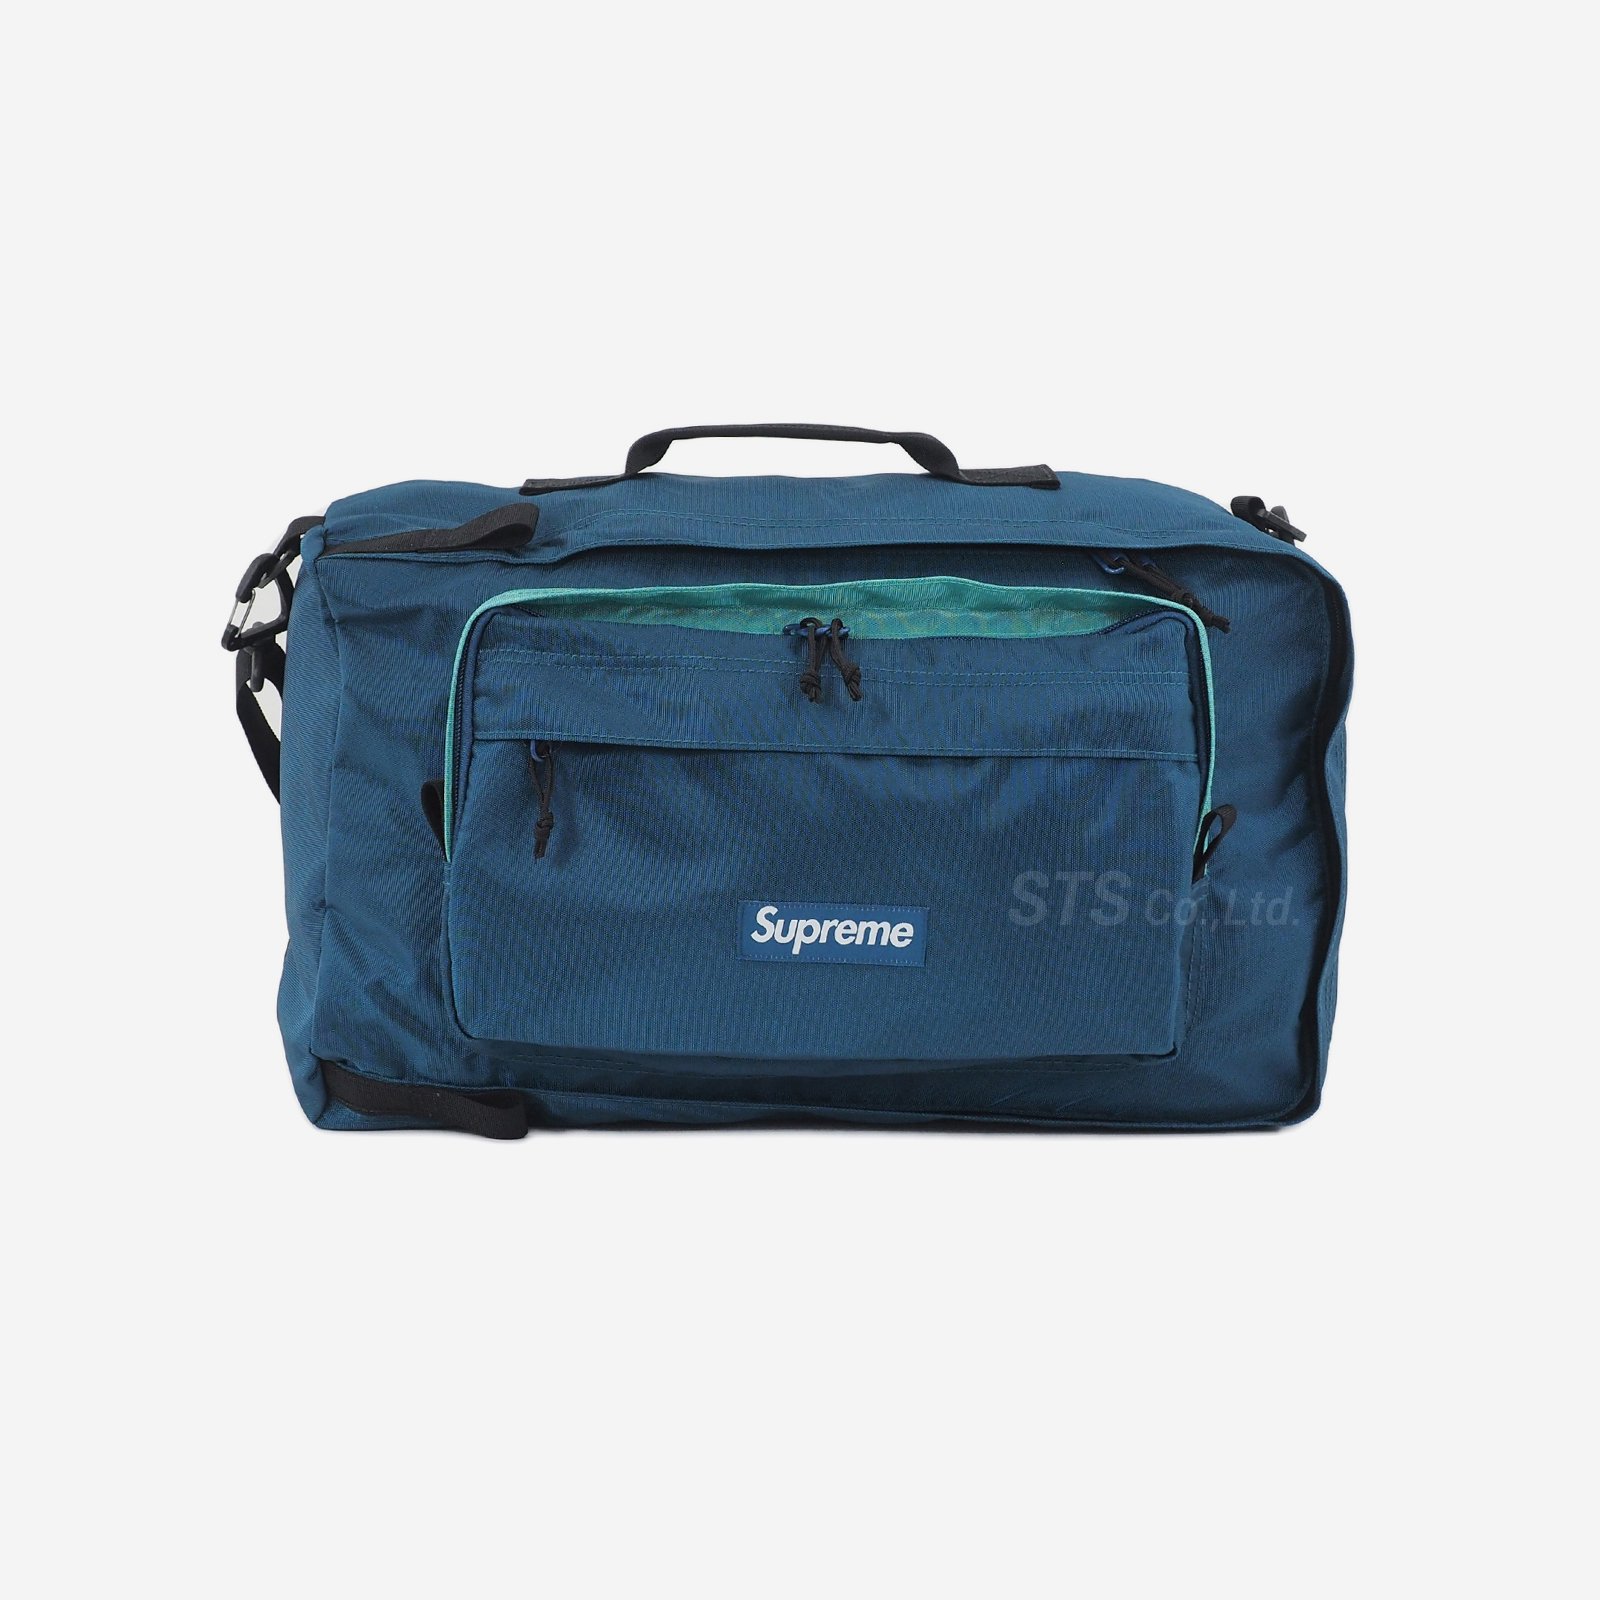 Supreme - Duffle Bag - UG.SHAFT